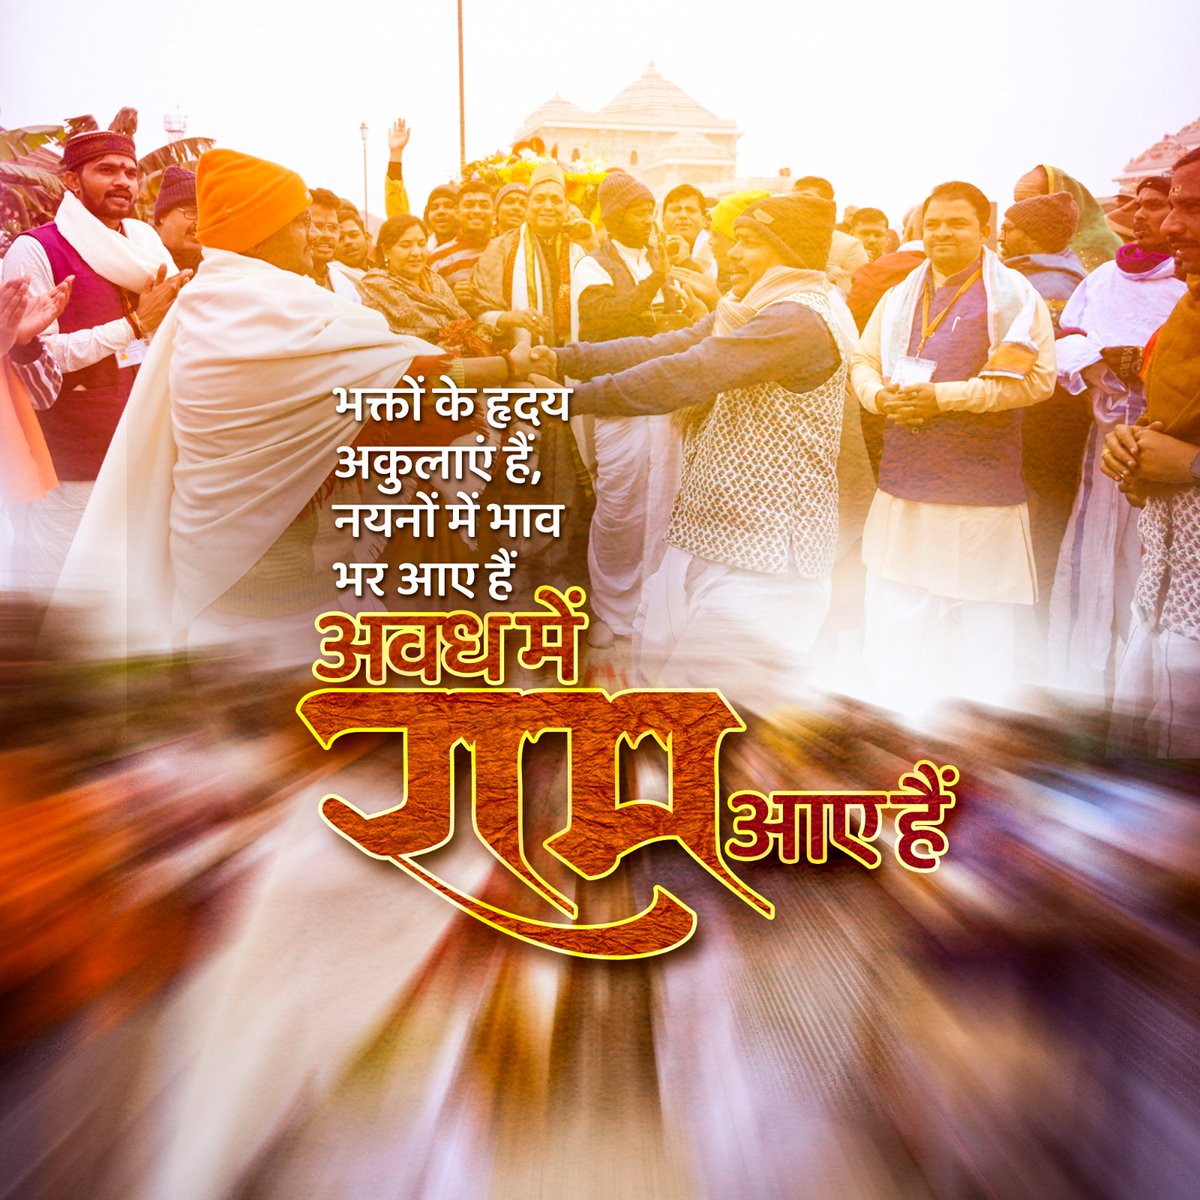 भक्तों के हृदय अकुलाएं हैं,
नयनों में भाव भर आए हैं ,
अवध में राम आए हैं ।

#Ayodhya #RamJanmabhoomi #RamMandir #MandirWahinBanayenge #जयश्रीराम #ShriRamHomecoming